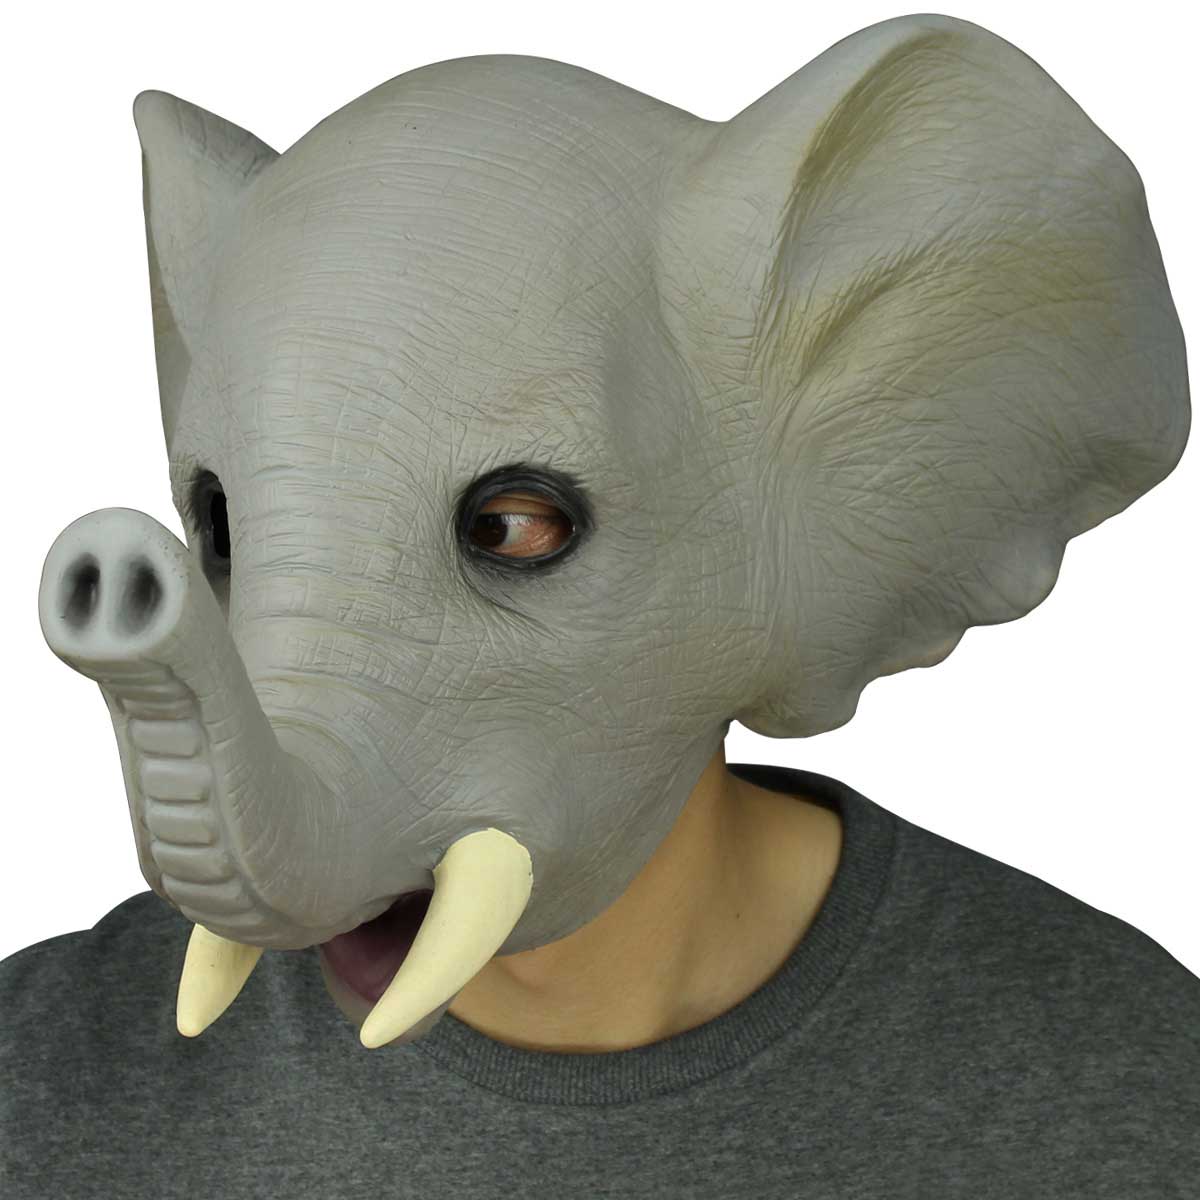 Deluxe novedad de látex de látex de látex del elefante máscara de la cabeza Halloween Cosplay Masquerade Party Props Decoraciones Gray